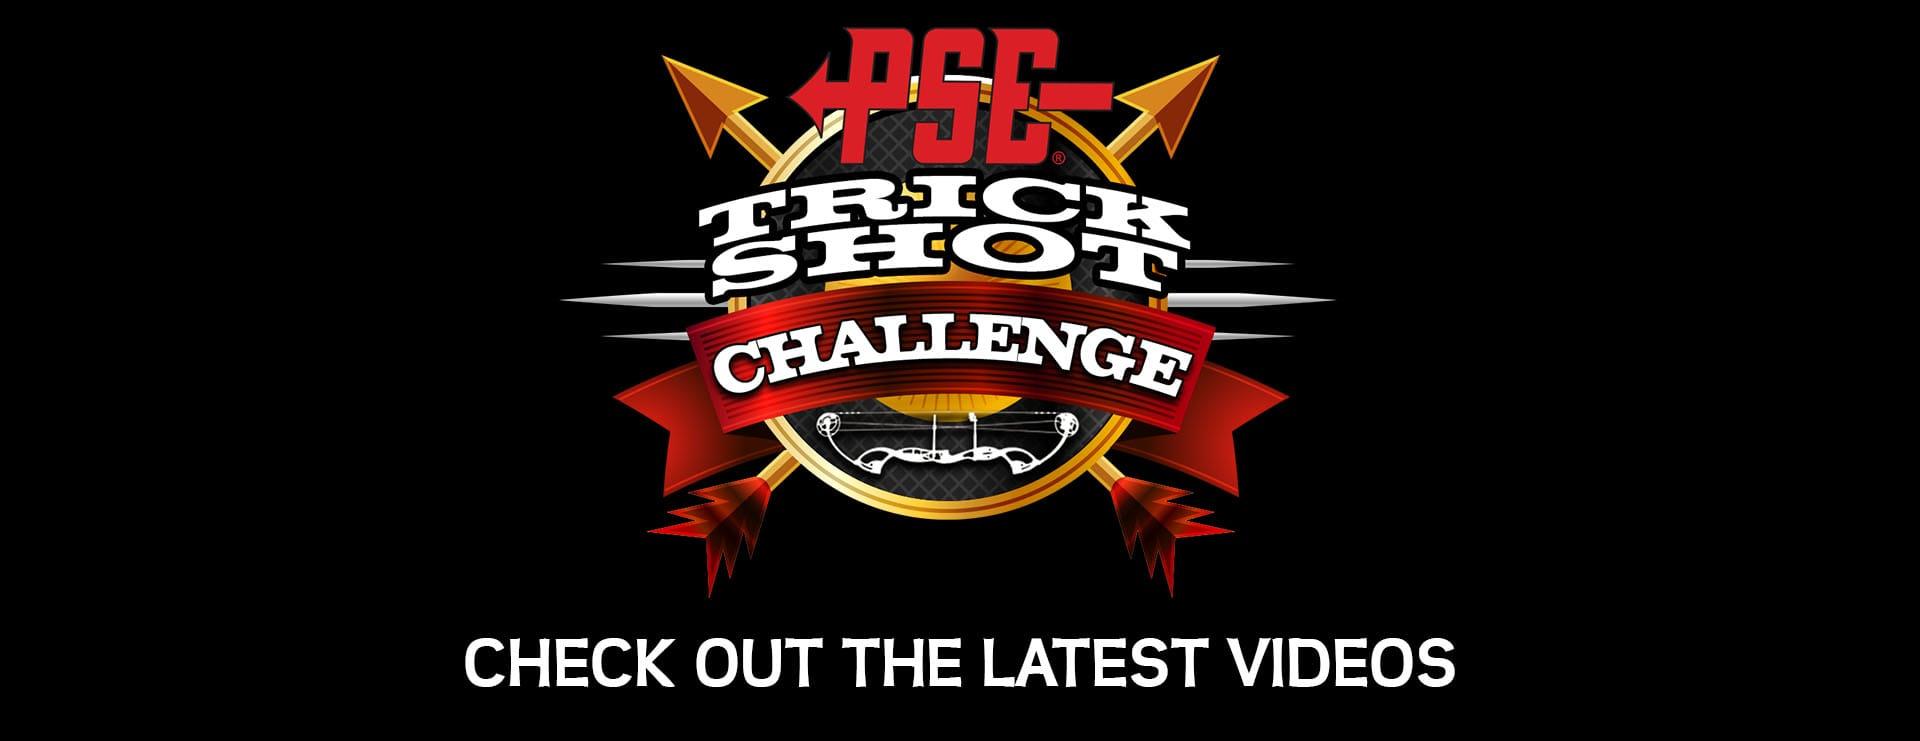 Trickshot Logo - PSE Trick Shot Challenge 2016